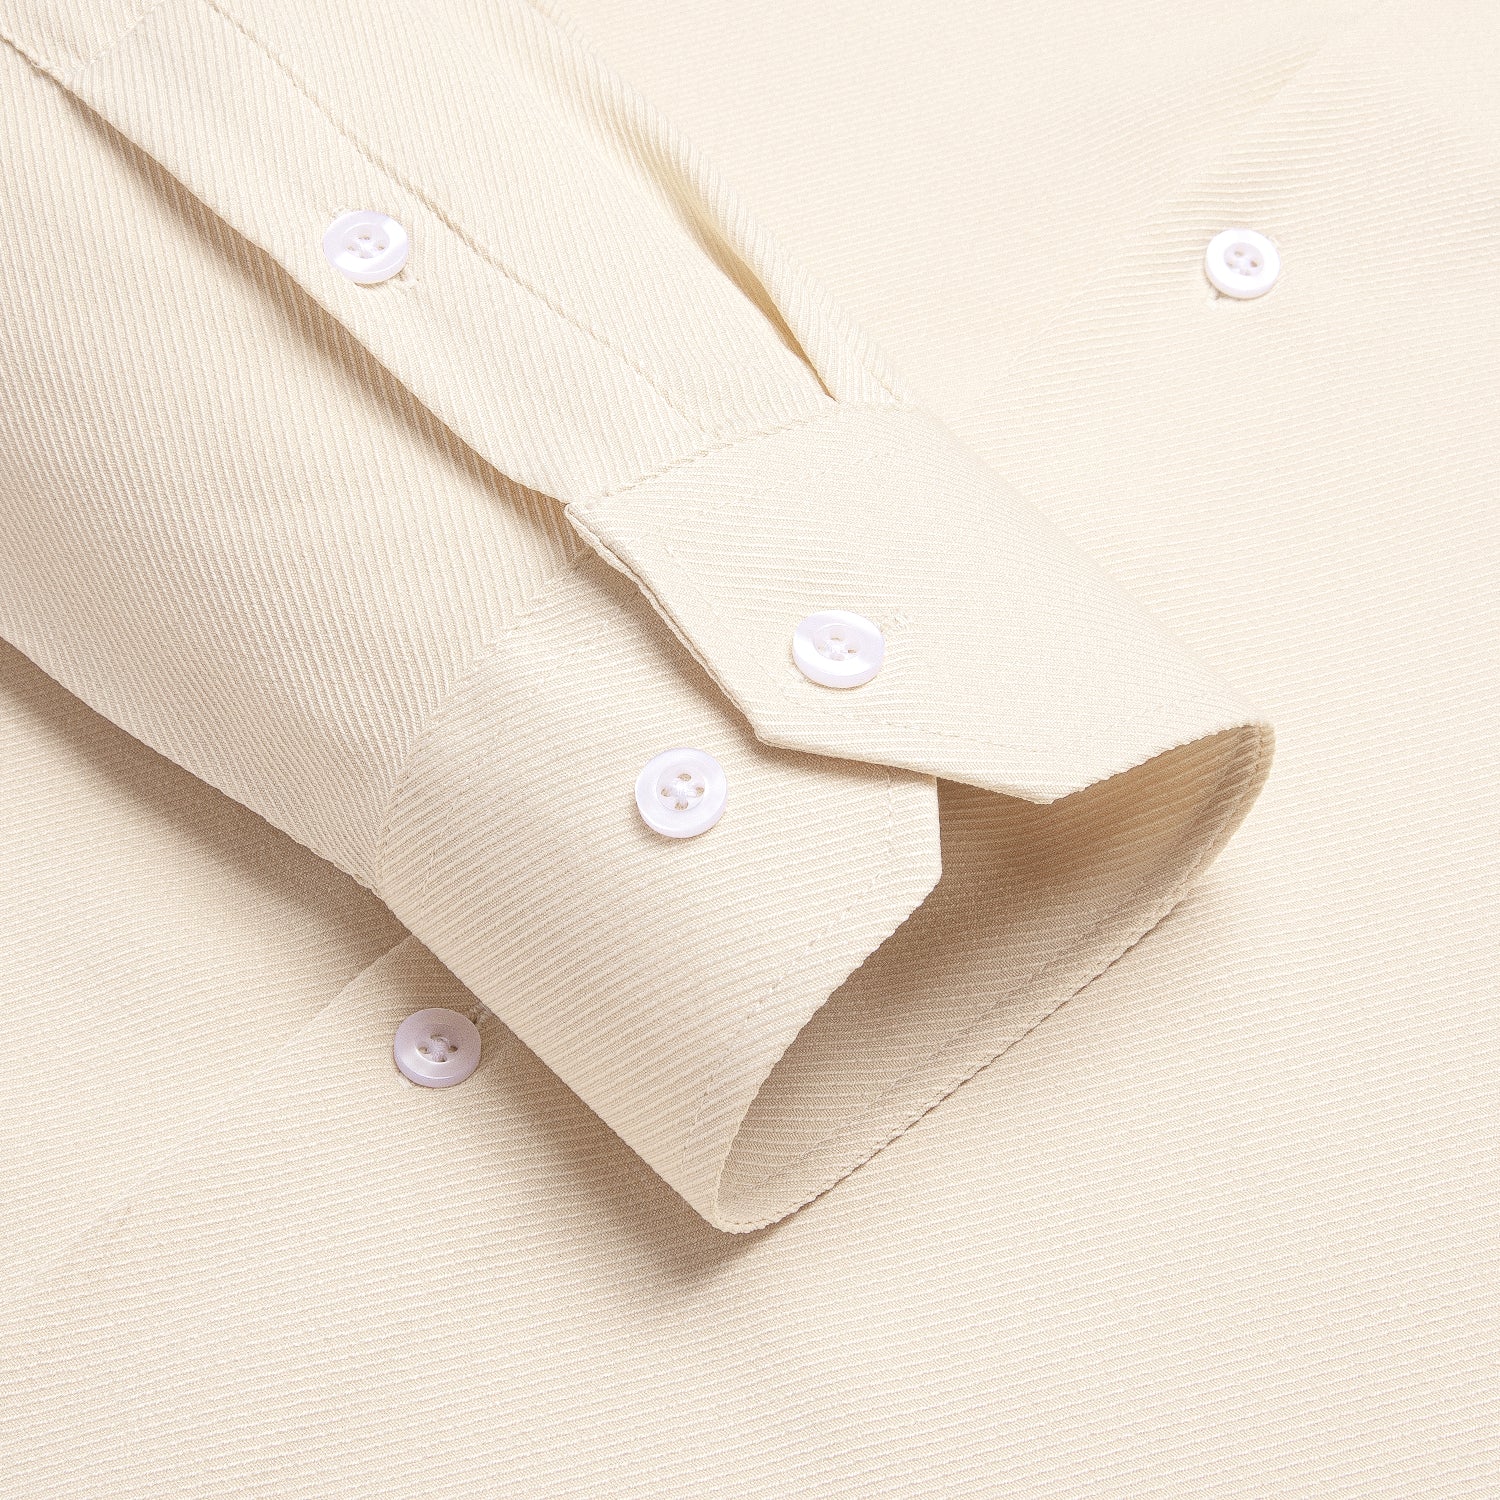 Light Apricot Beige Business Casual Versatile Men's Long Sleeve Dress Shirt